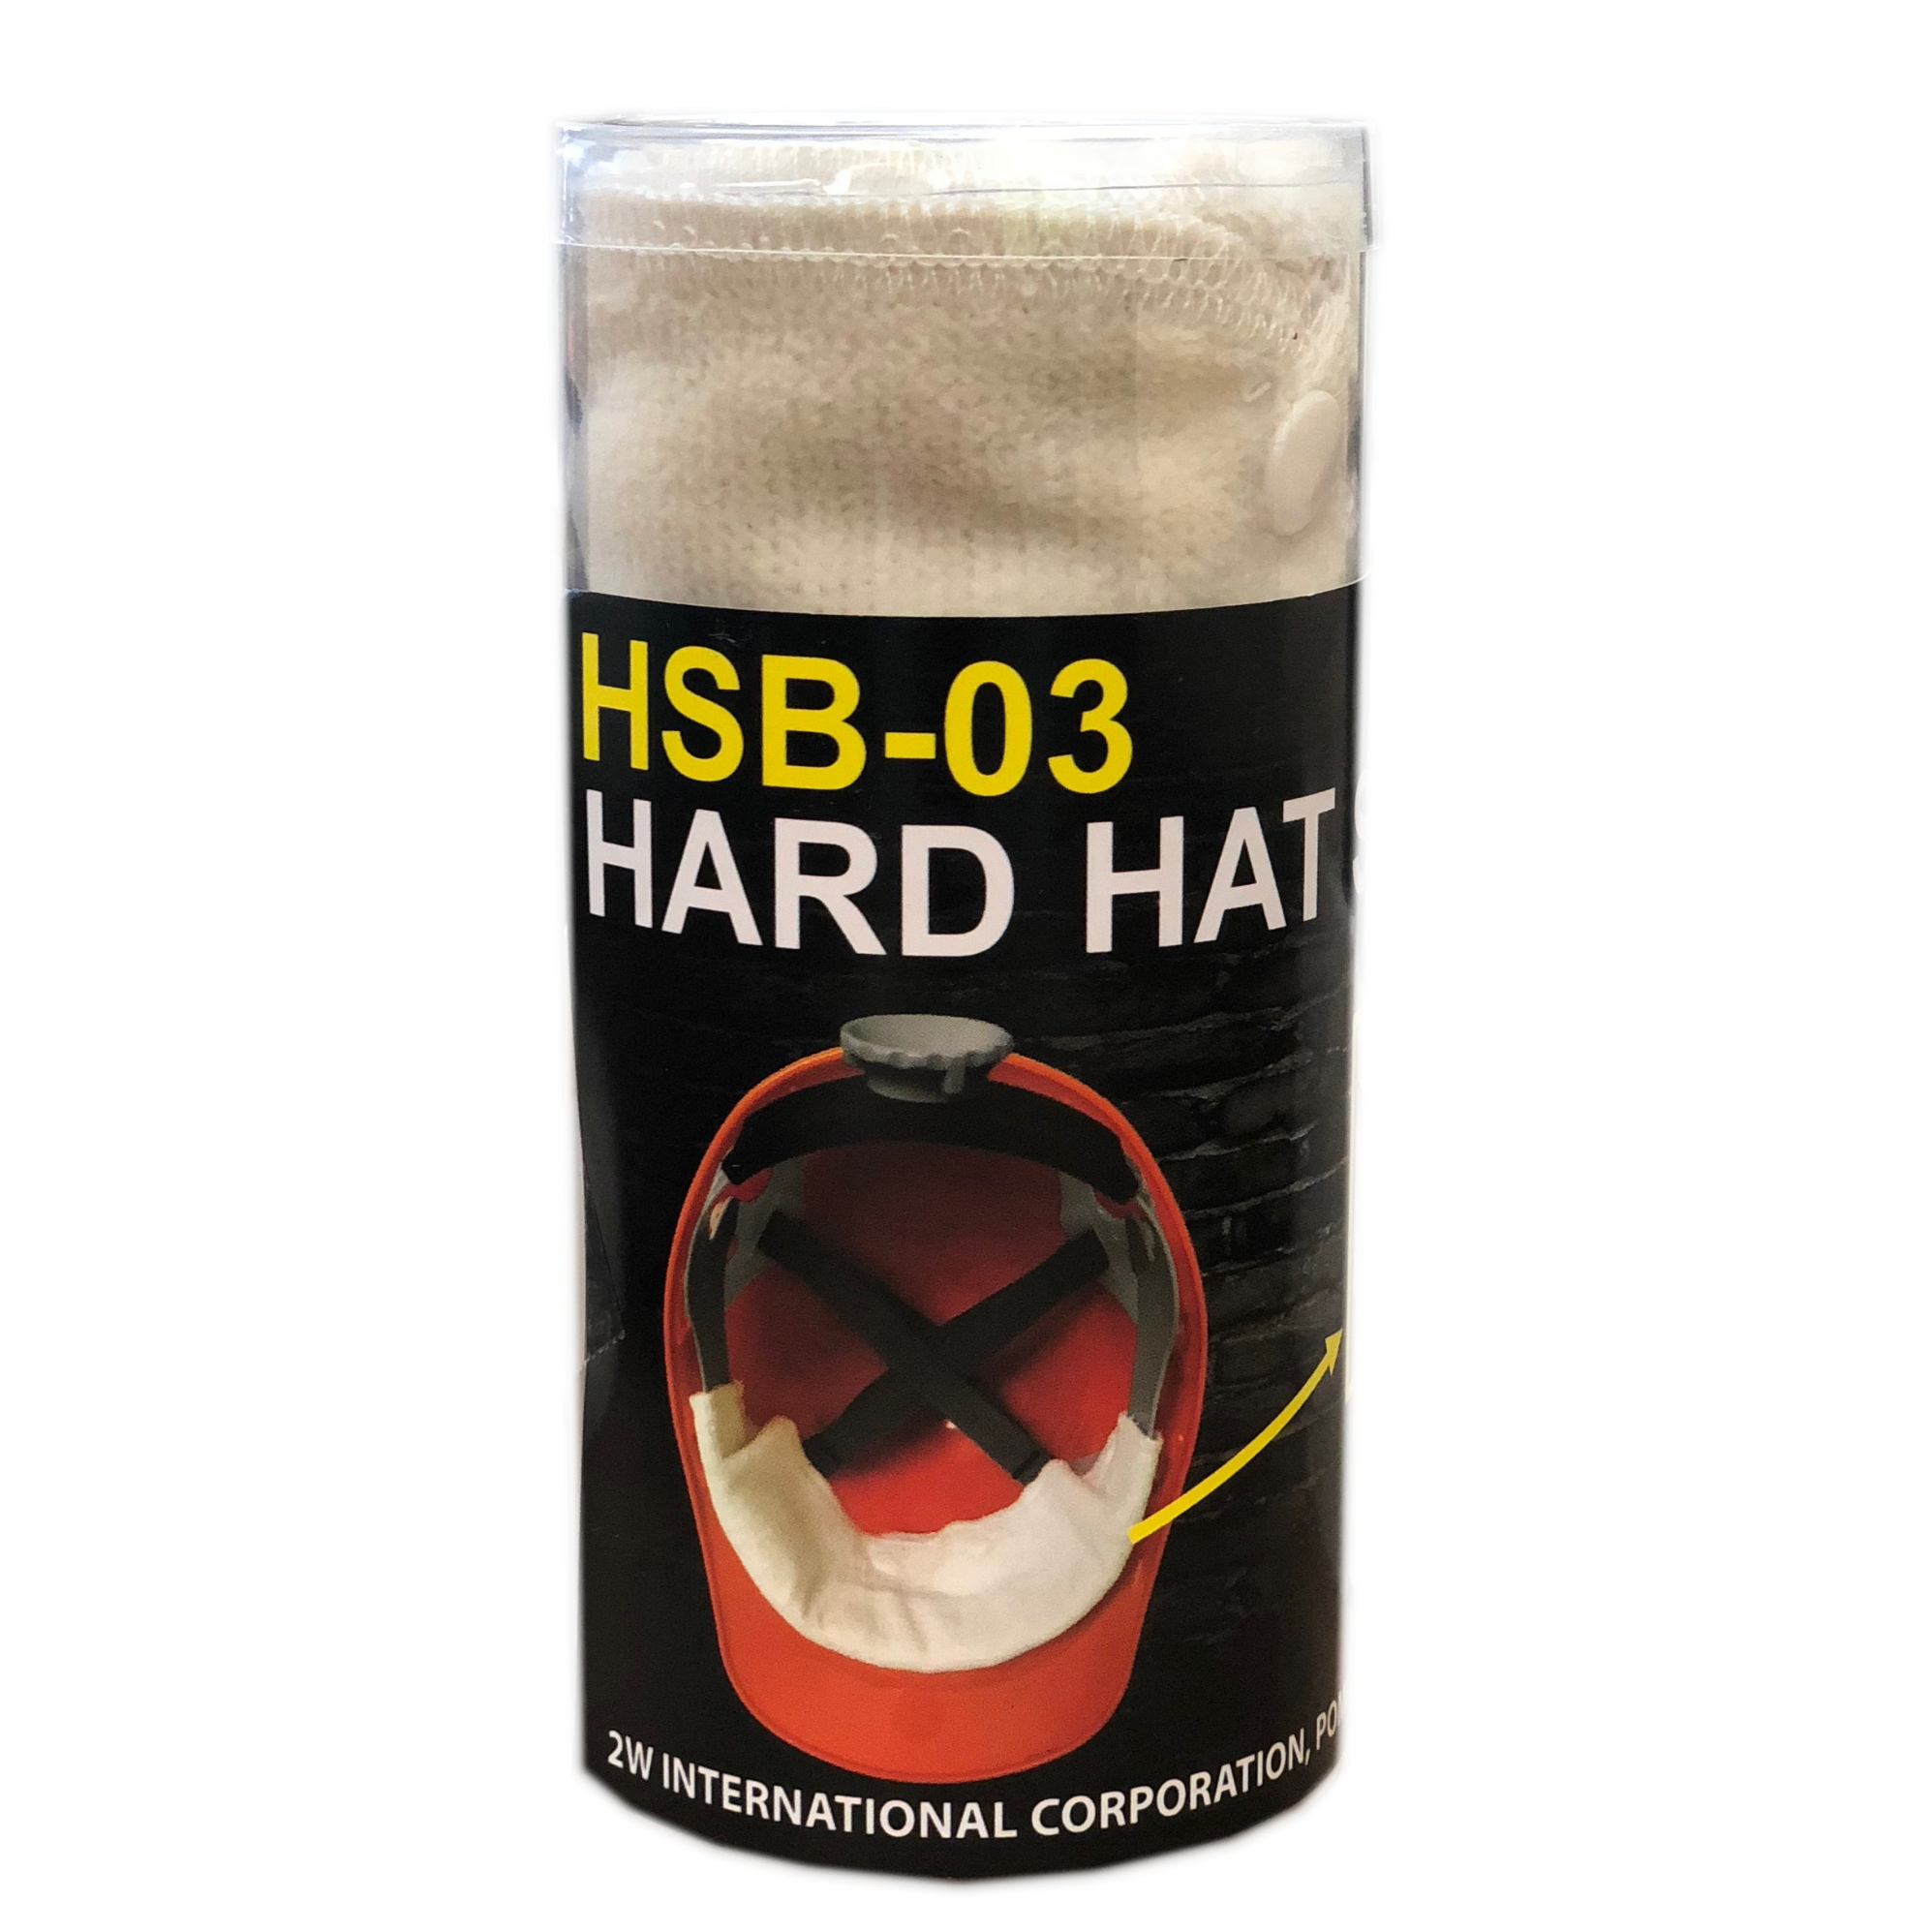 Hard Hat Sweat Band-2W International